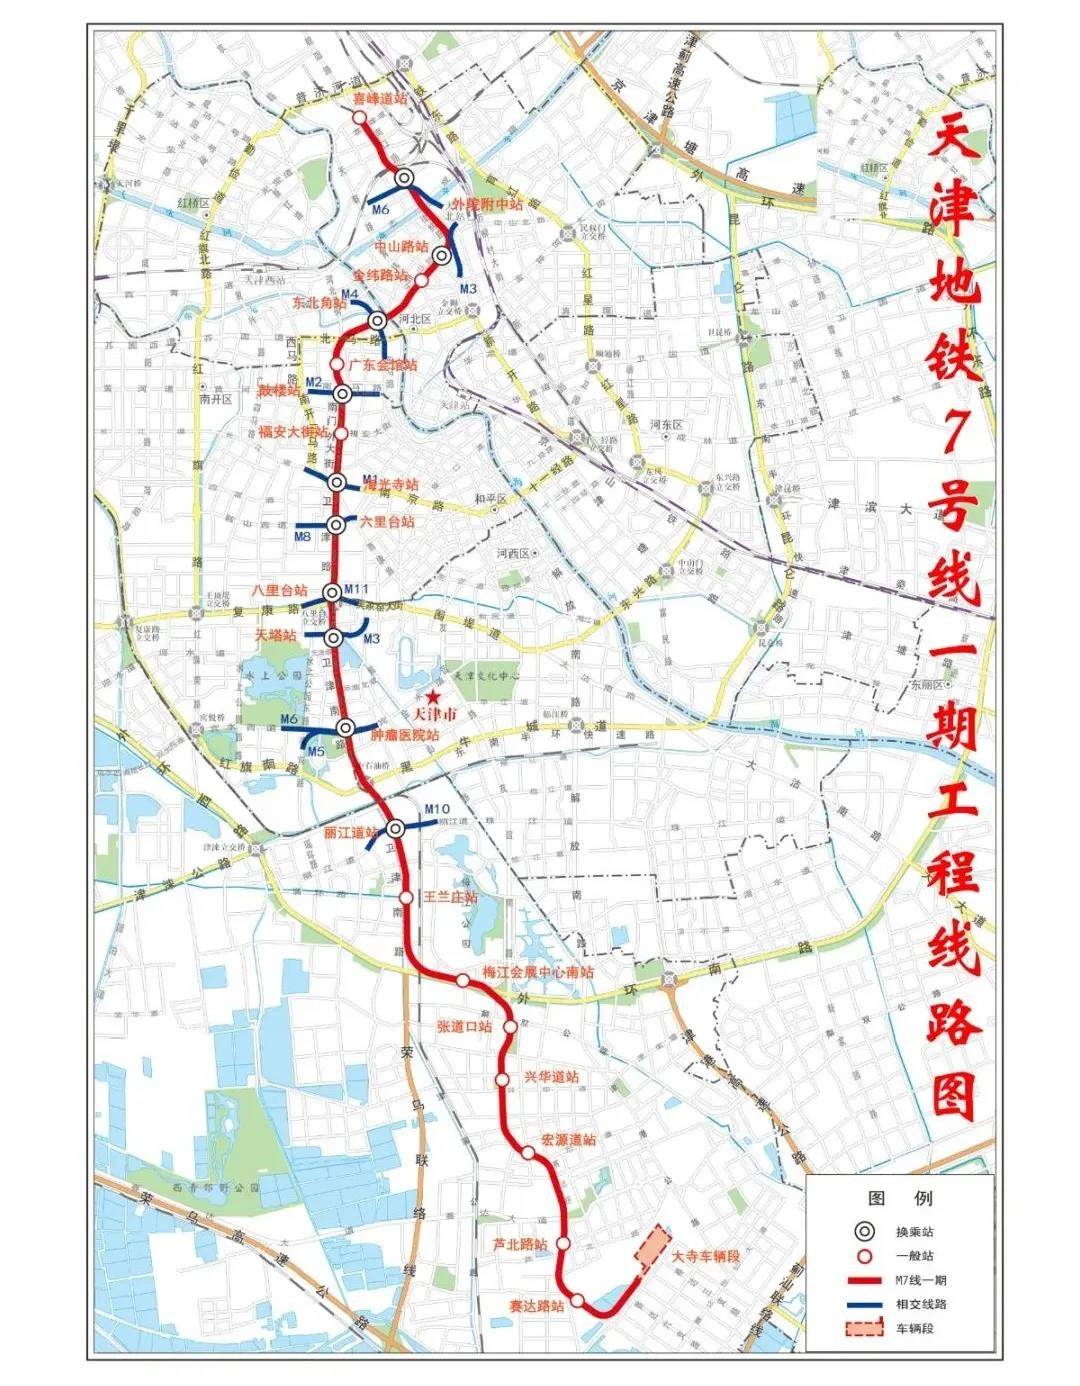 天津7条地铁线路最新进展!最快今年运营!